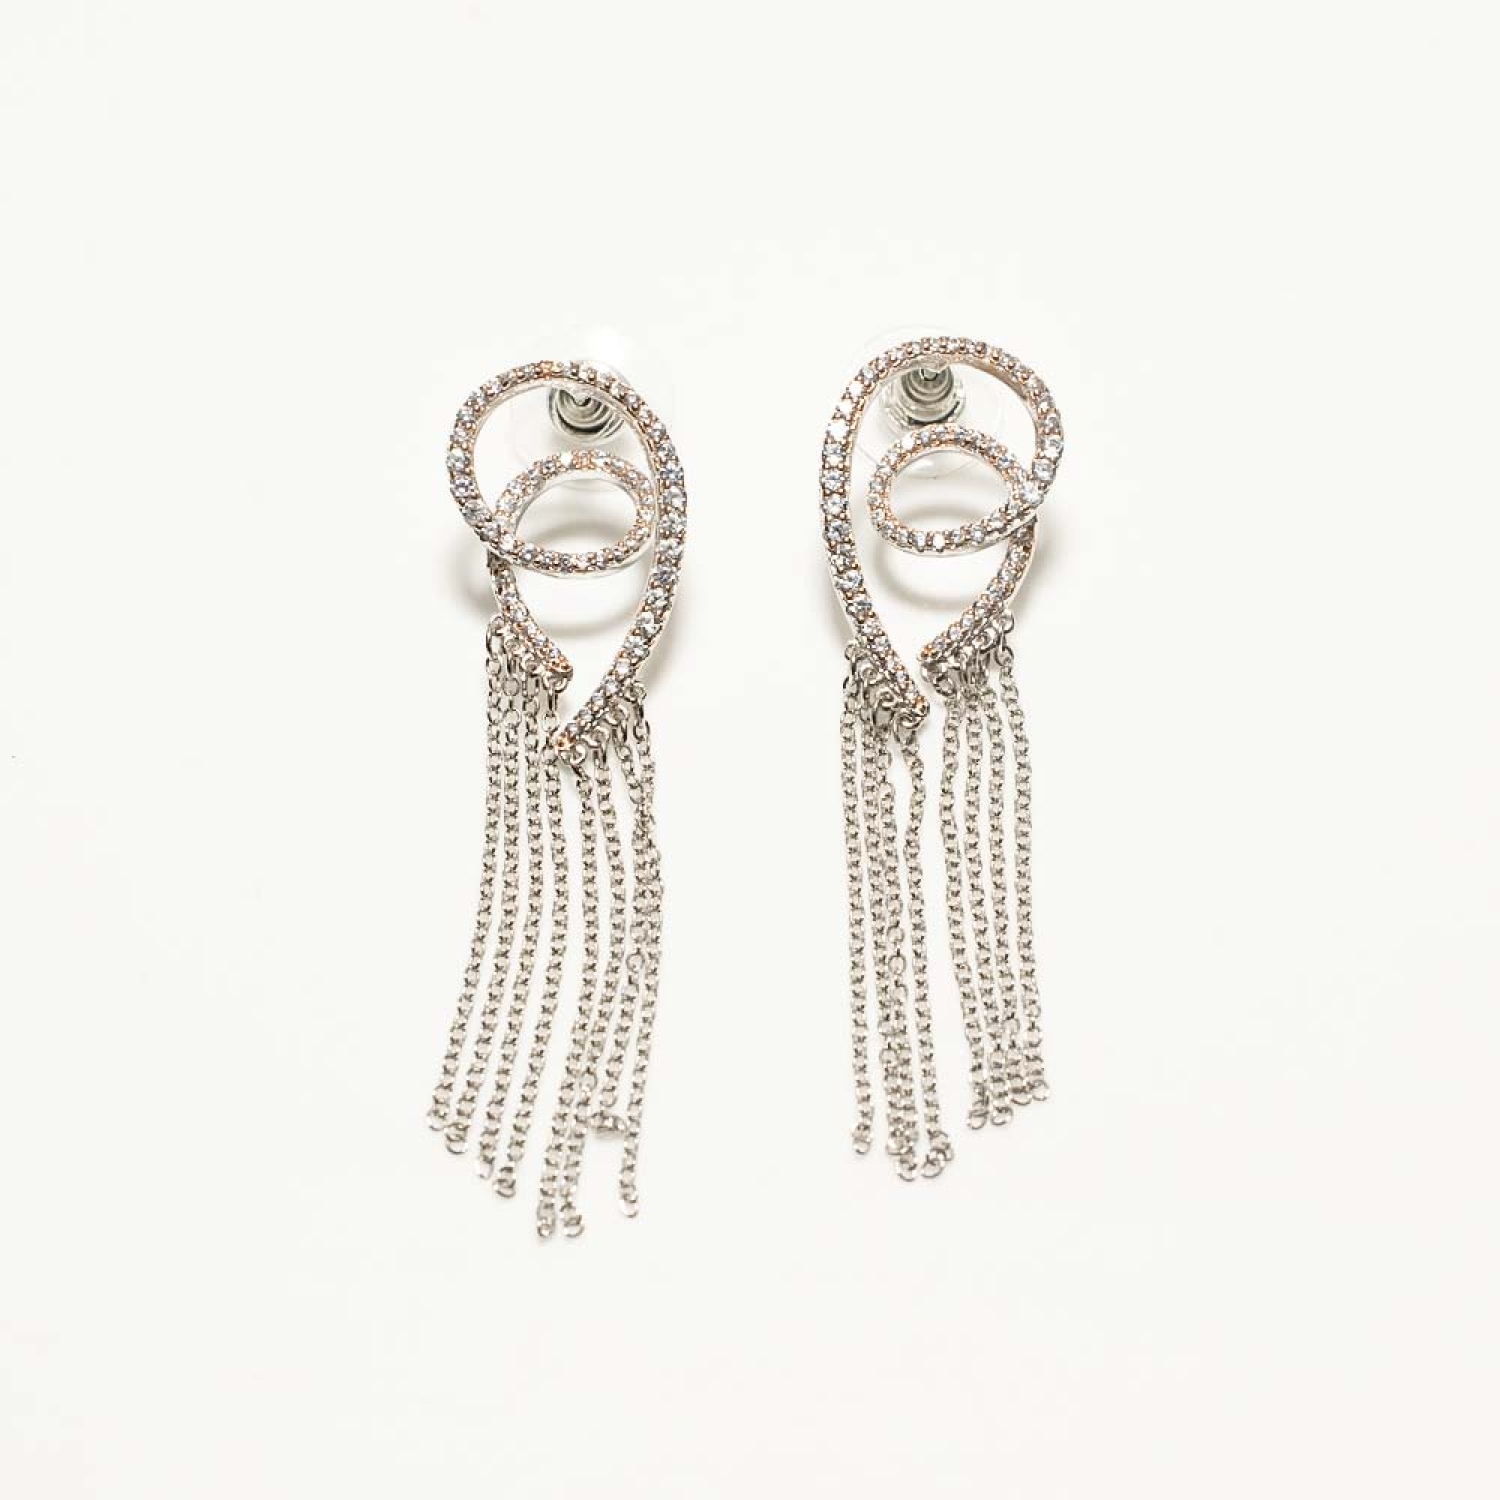 Buy Gold-Toned Earrings for Women by Zeneme Online | Ajio.com